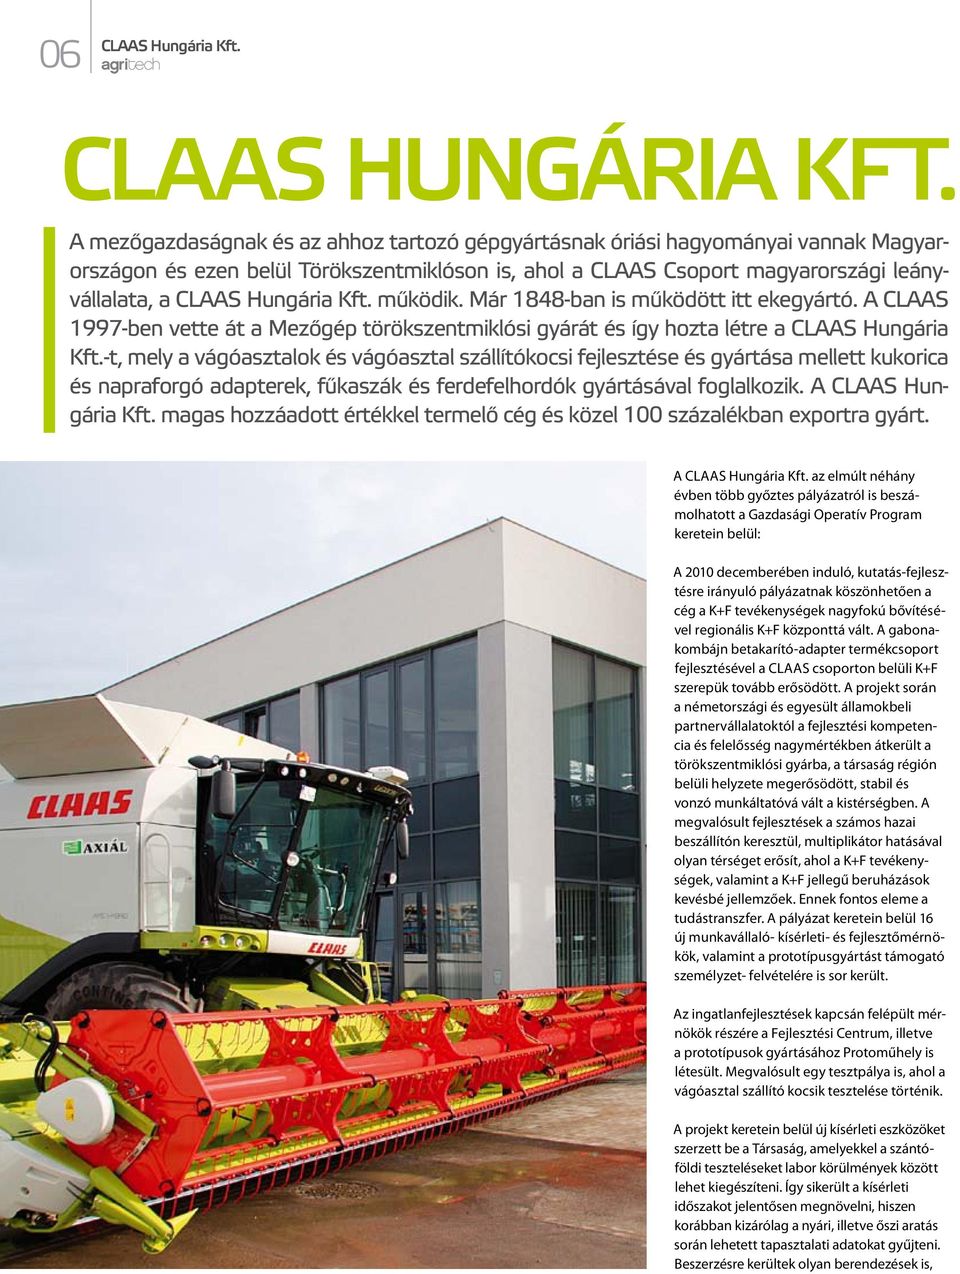 Kft. működik. Már 1848-ban is működött itt ekegyártó. A CLAAS 1997-ben vette át a Mezőgép törökszentmiklósi gyárát és így hozta létre a CLAAS Hungária Kft.